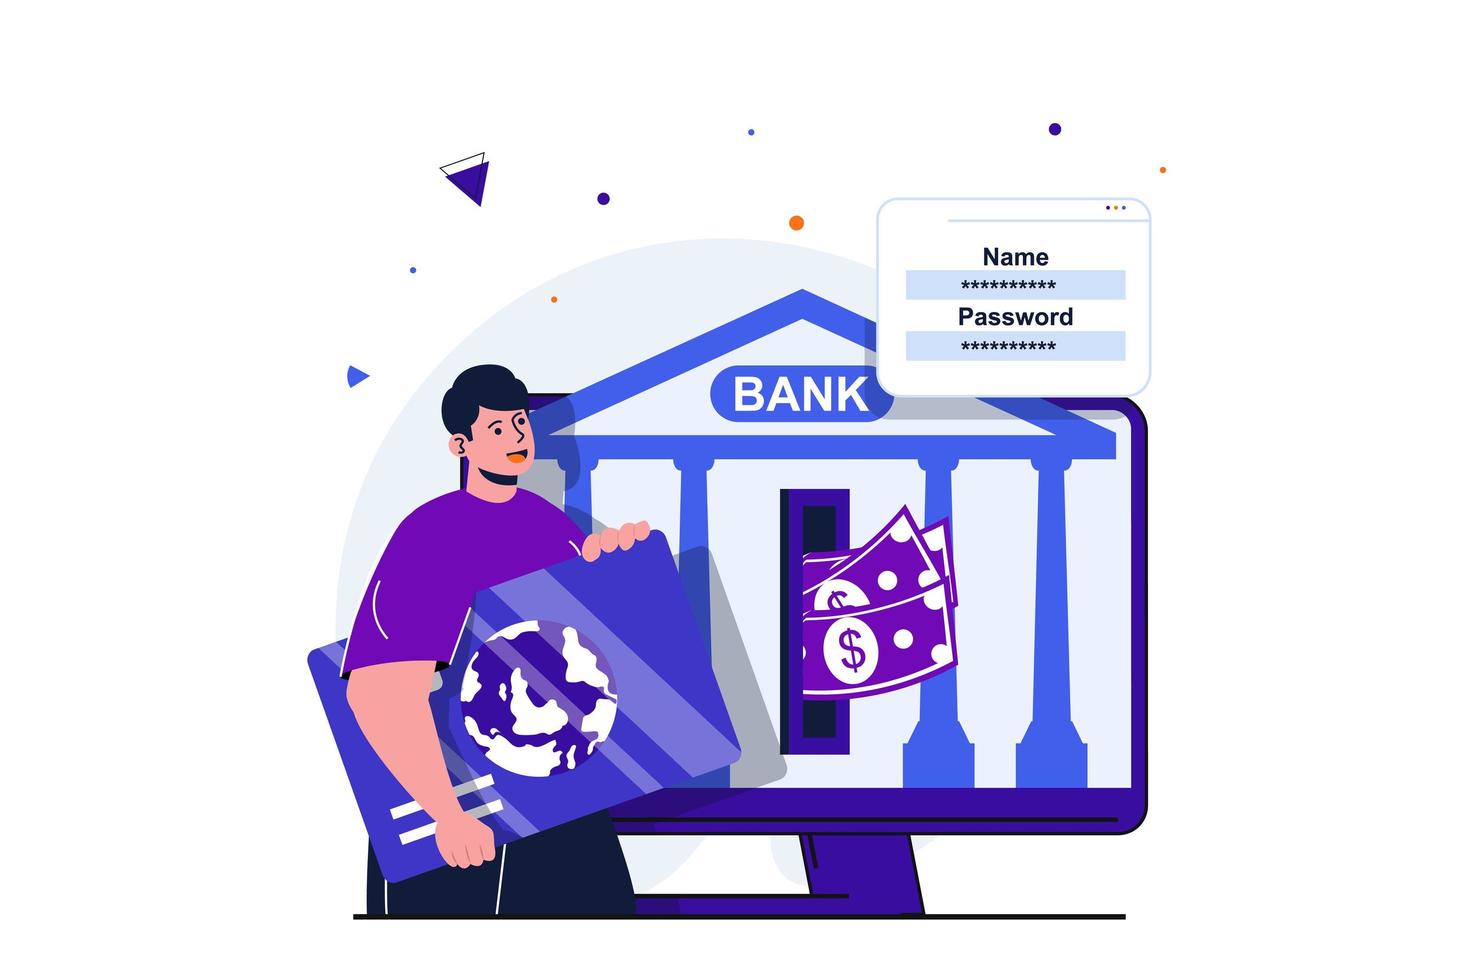 mobil bank modern platt koncept för webb banner design. man klient som använder kreditkort, genomför finansiella transaktioner och säkra överföringar online. vektor illustration med isolerade människor scen